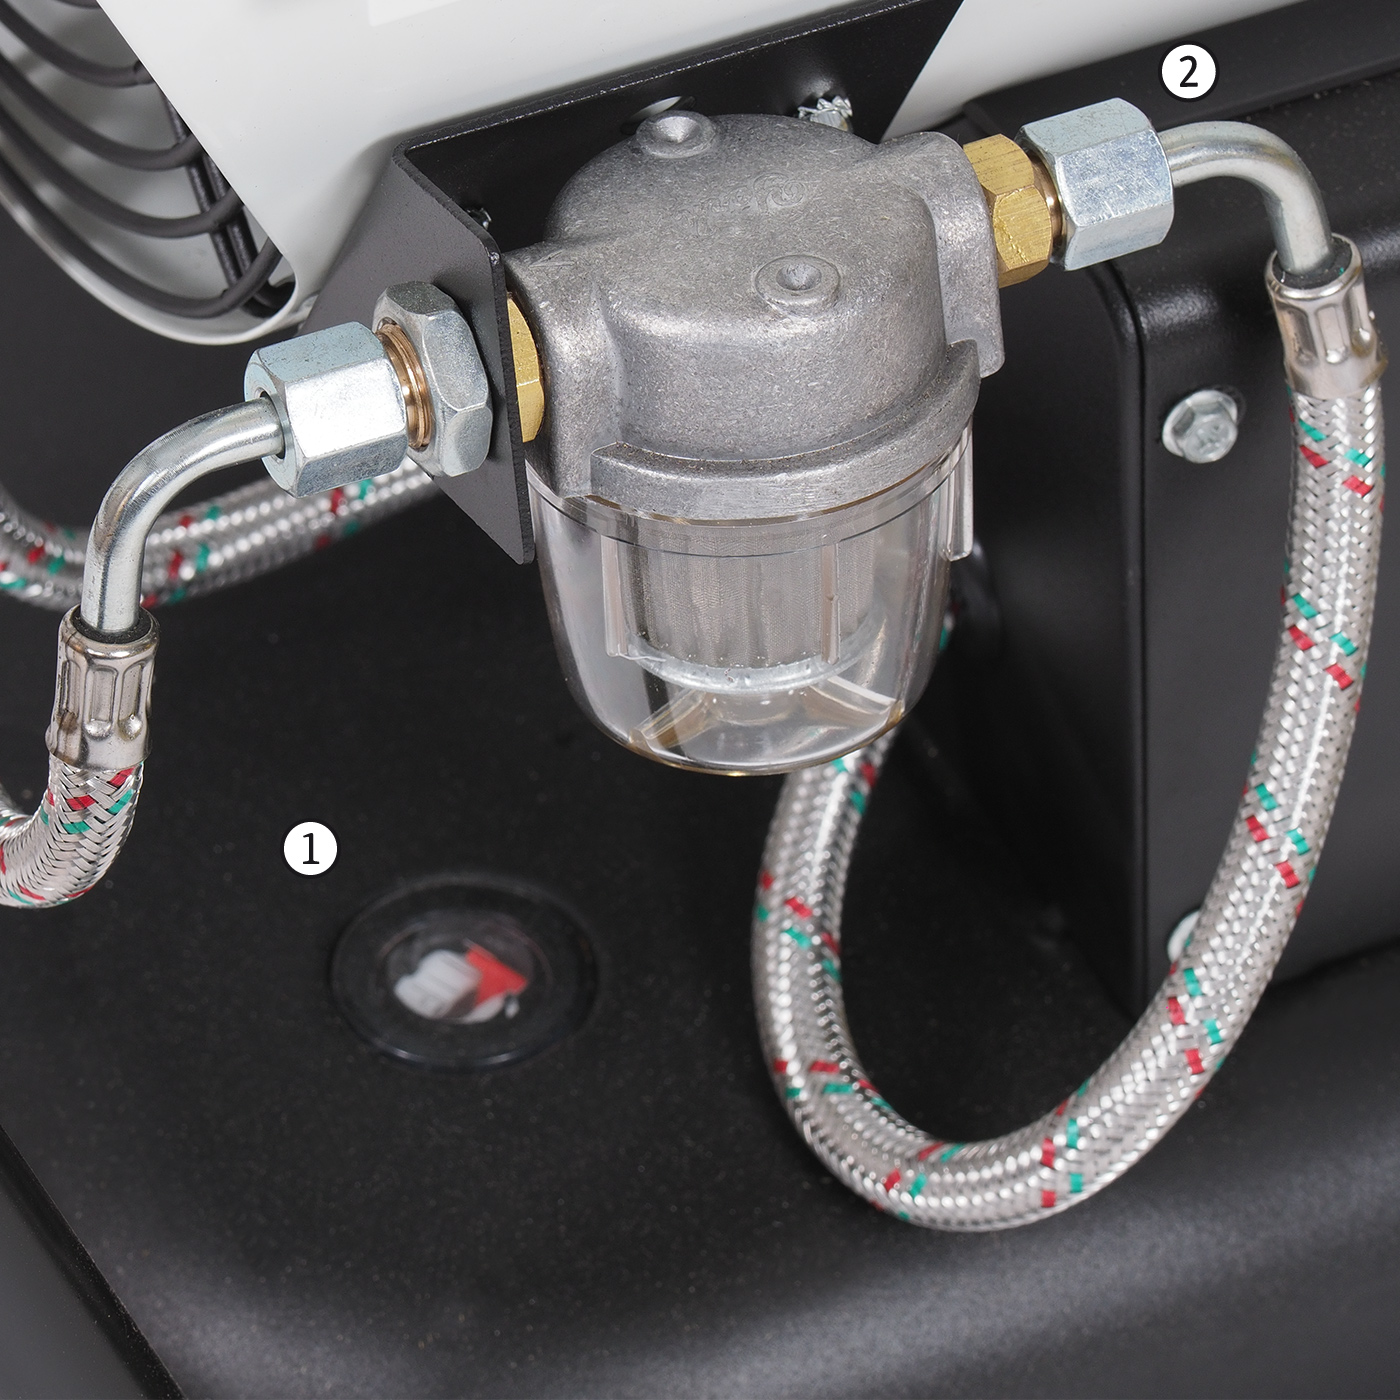 Indikator razine u spremniku i filter goriva izvana